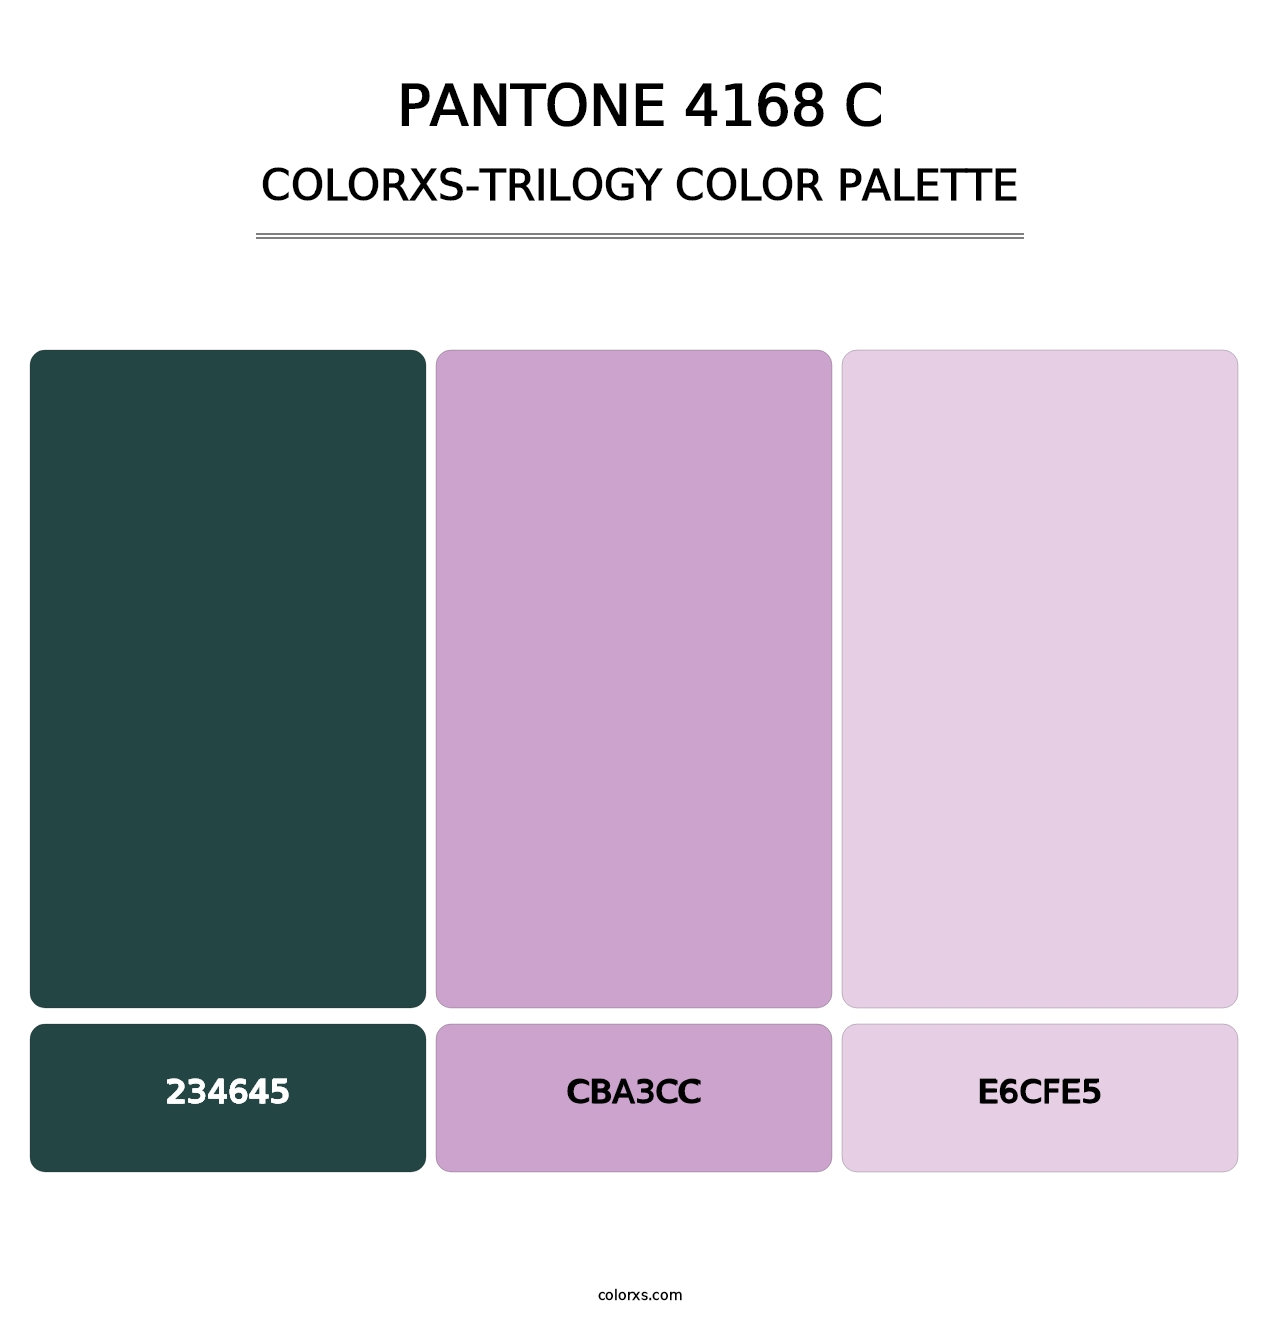 PANTONE 4168 C - Colorxs Trilogy Palette